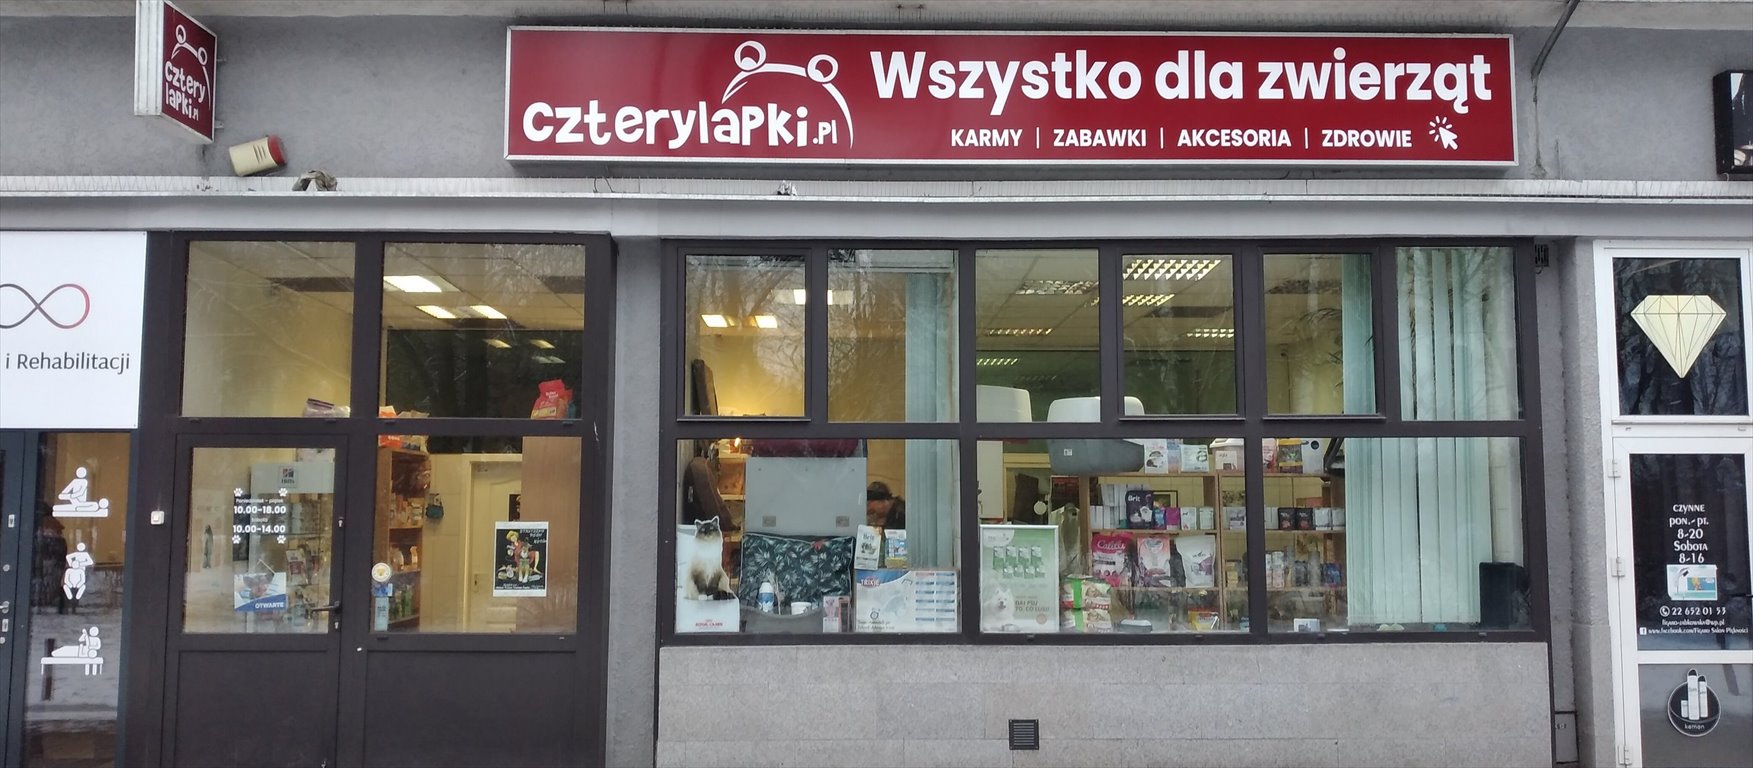 Lokal użytkowy na wynajem Warszawa, Śródmieście, Żelazna Brama", Graniczna 4  58m2 Foto 1